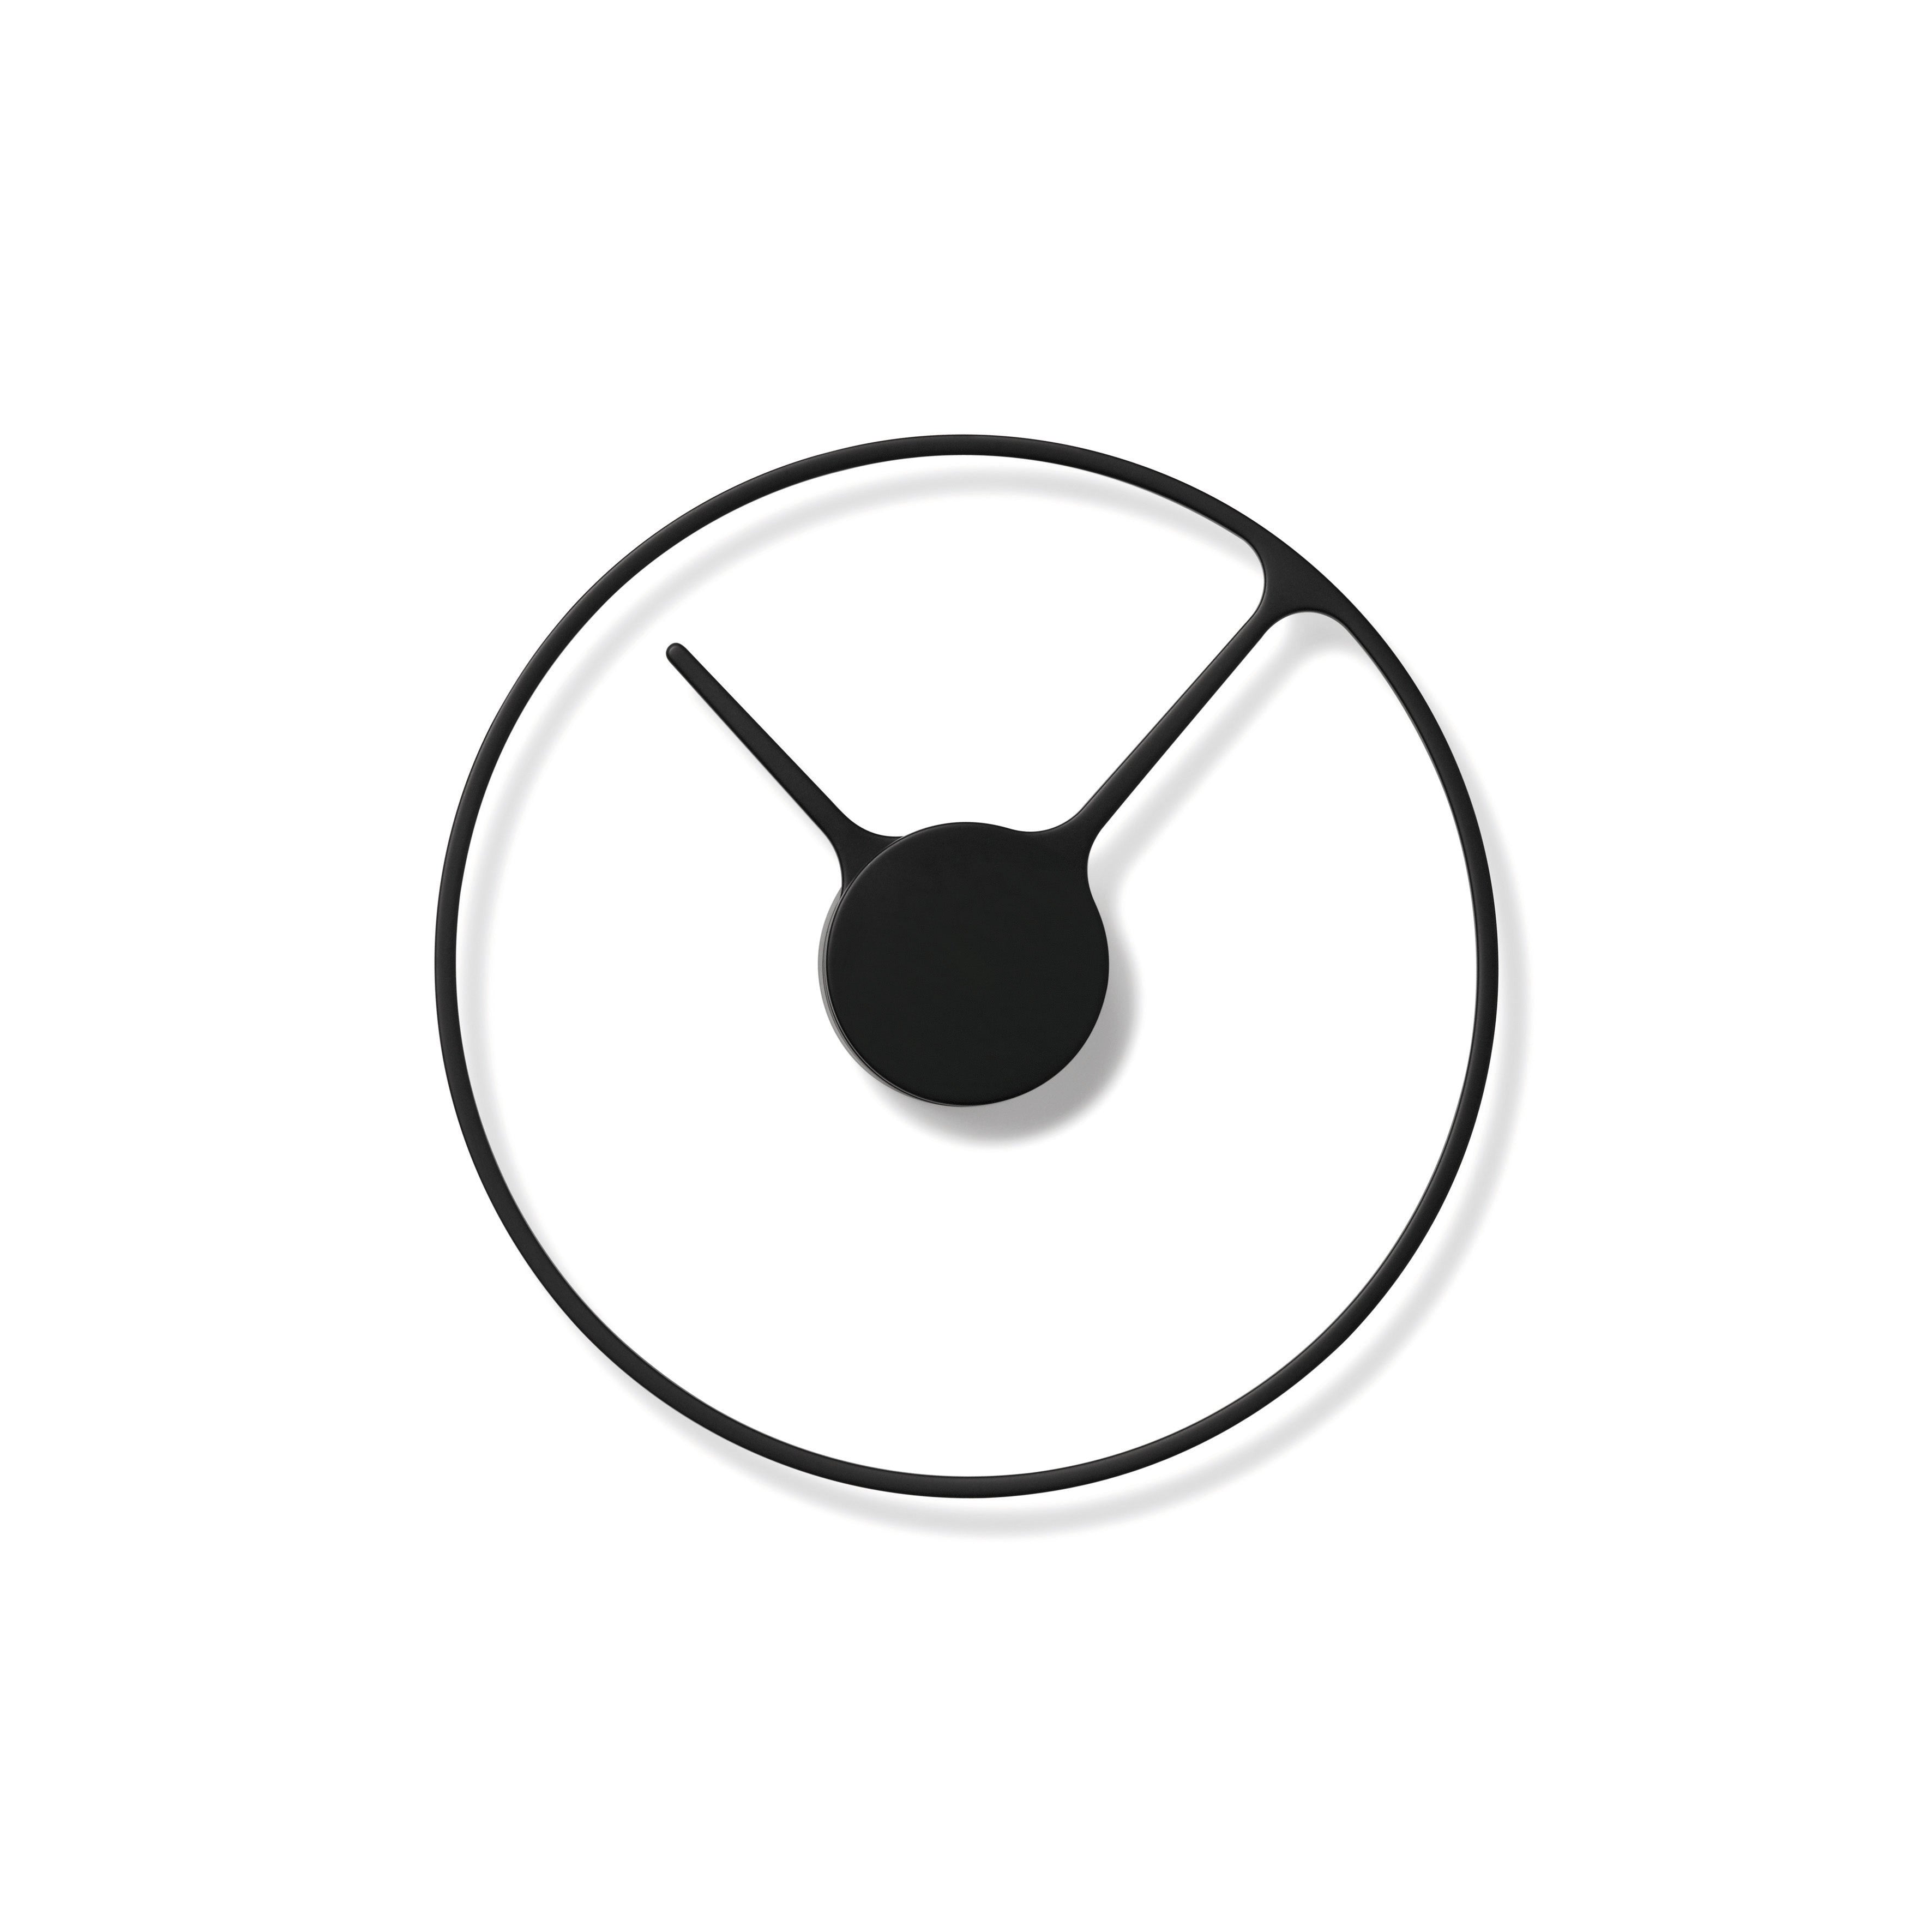 Stelton / Time / Wanduhr - Ø 30 - schwarz Uhr 